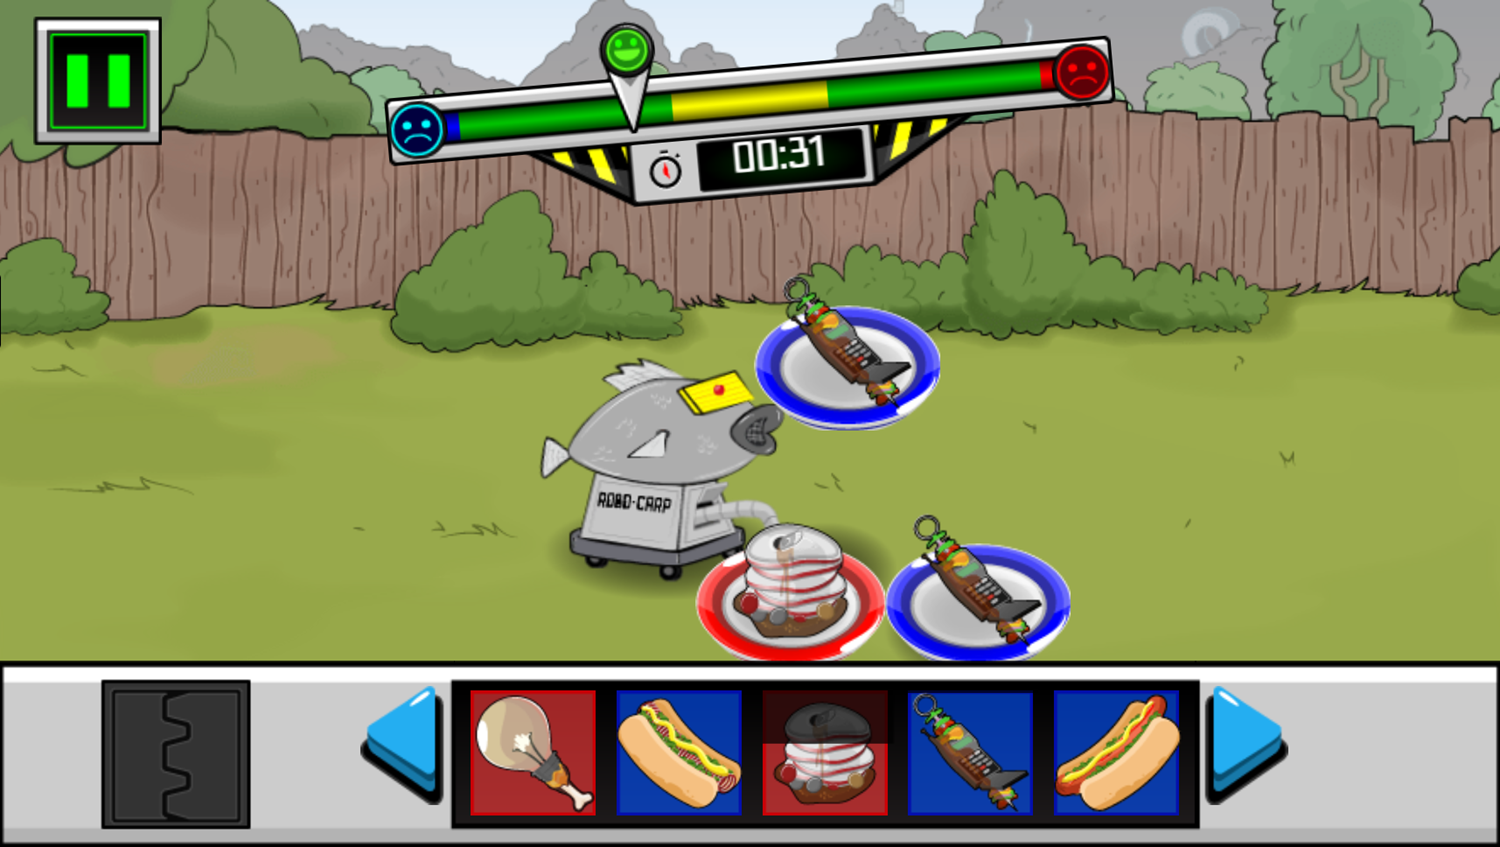 Robo-Carpe Diem Game Play Screenshot.